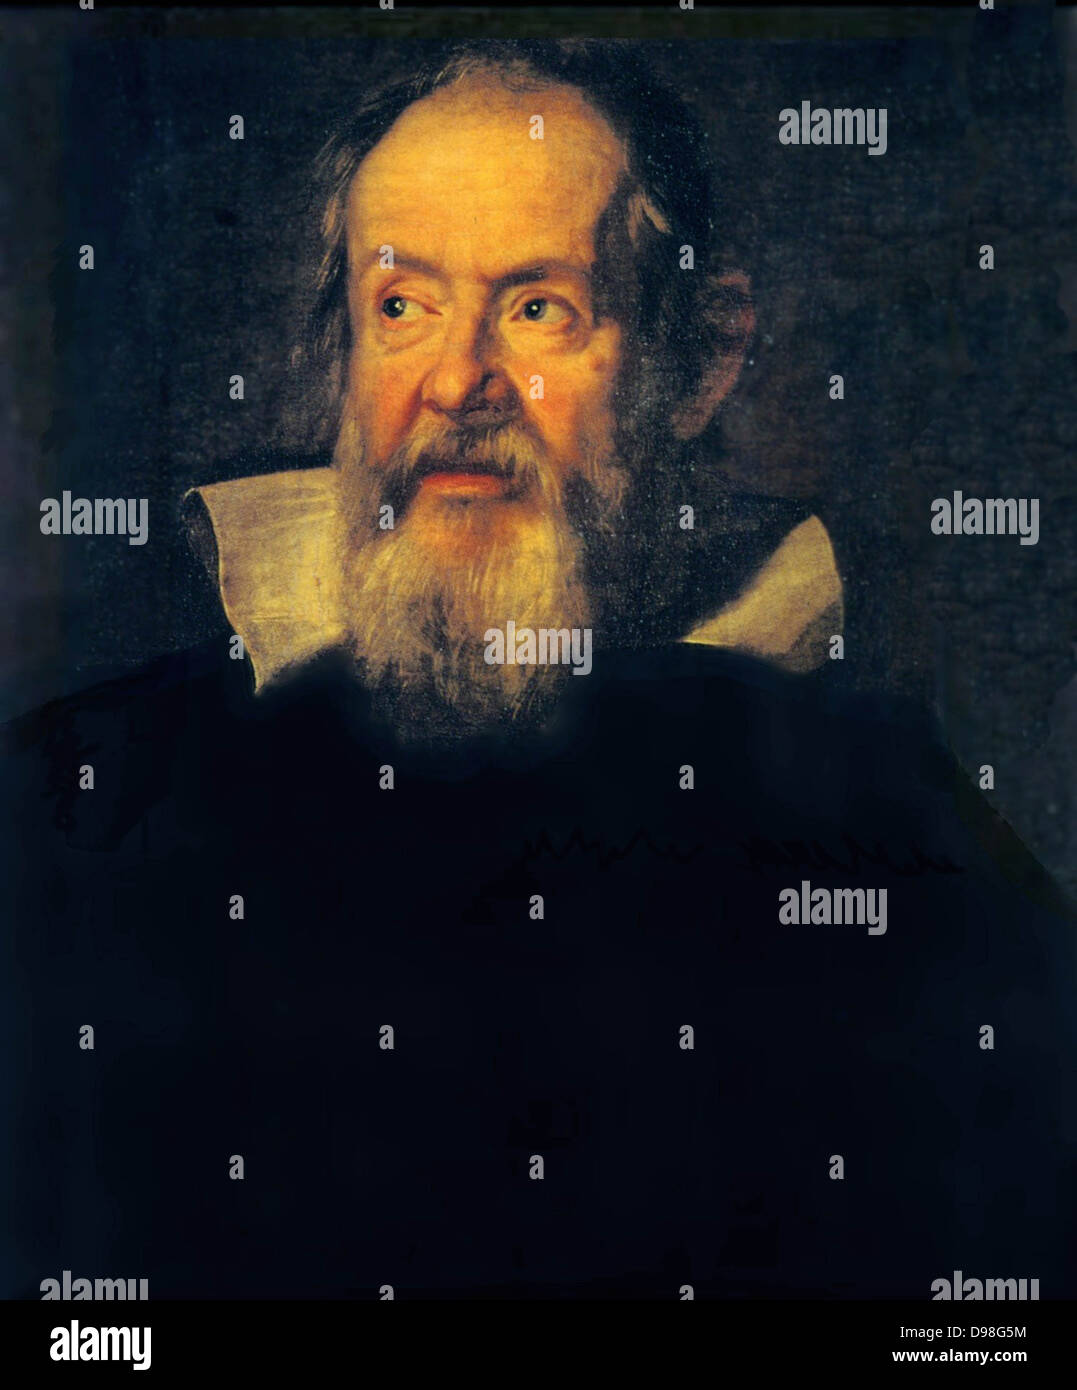 Porträt von Galileo Galilei flämischen Künstlers Justus Sustermans (1597-1681). Galileo (15 Februar 1564 – 8. Januar 1642), italienischer Physiker, Mathematiker, Astronom und Philosoph. Stockfoto